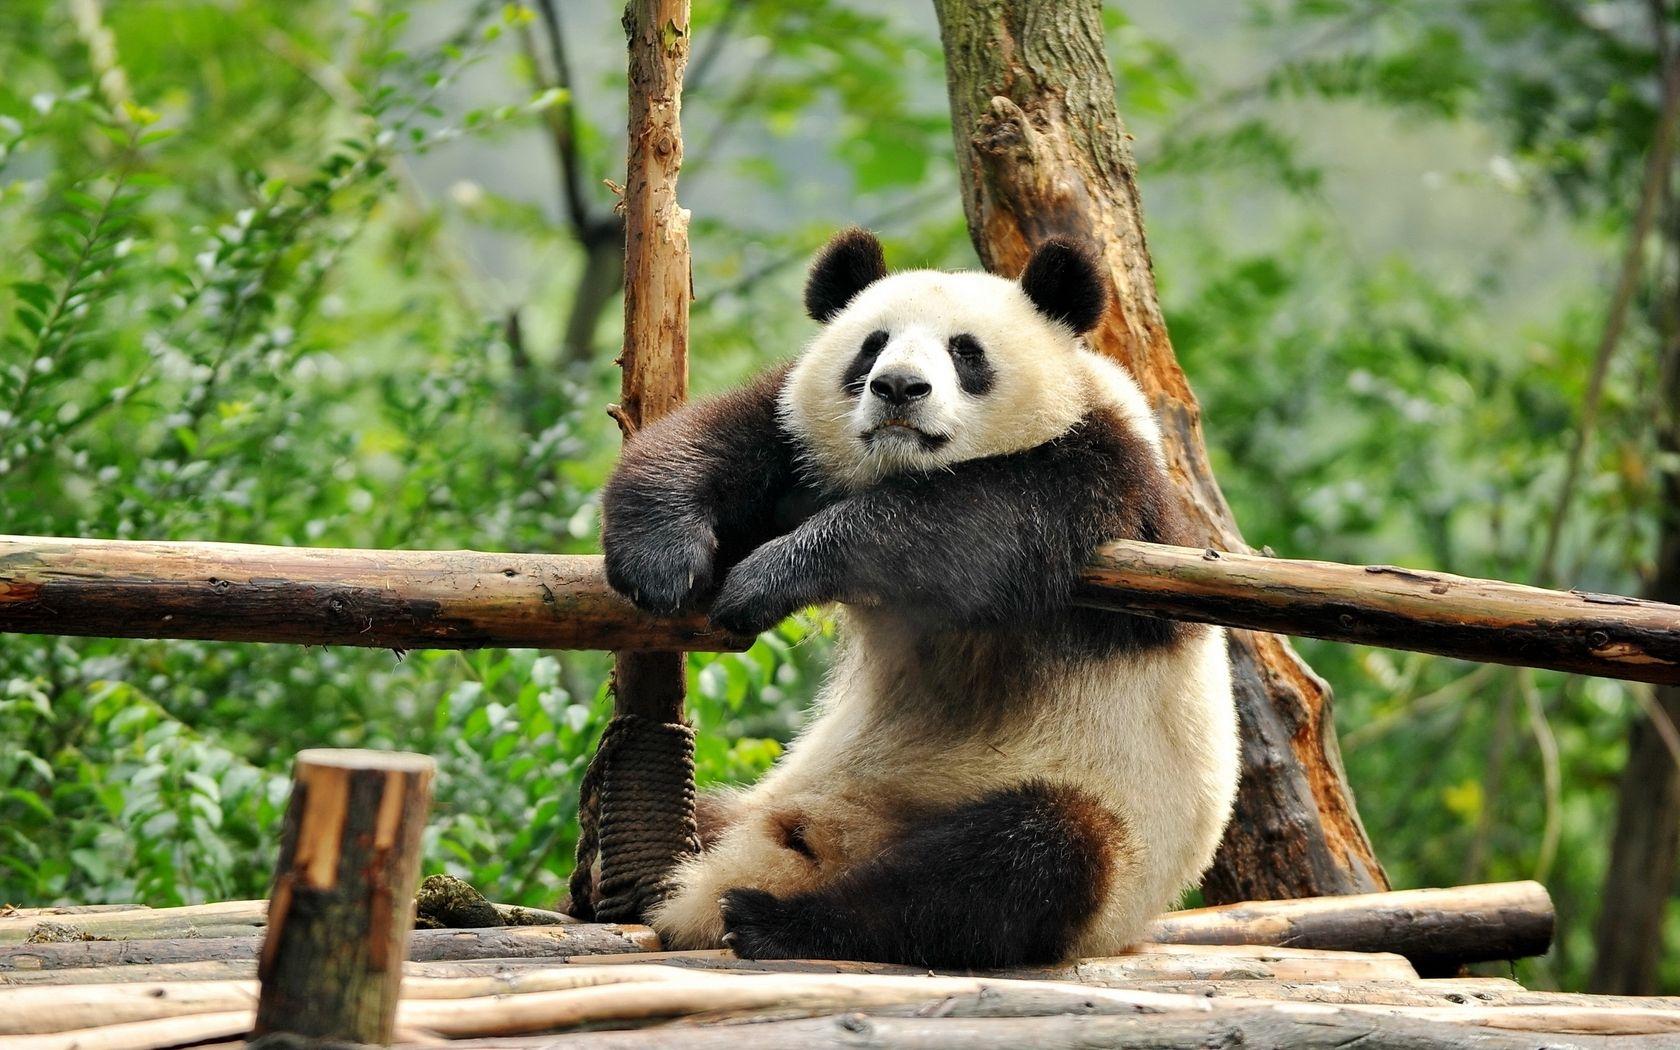 Panda Bear. Panda. Panda, Bears and Animal